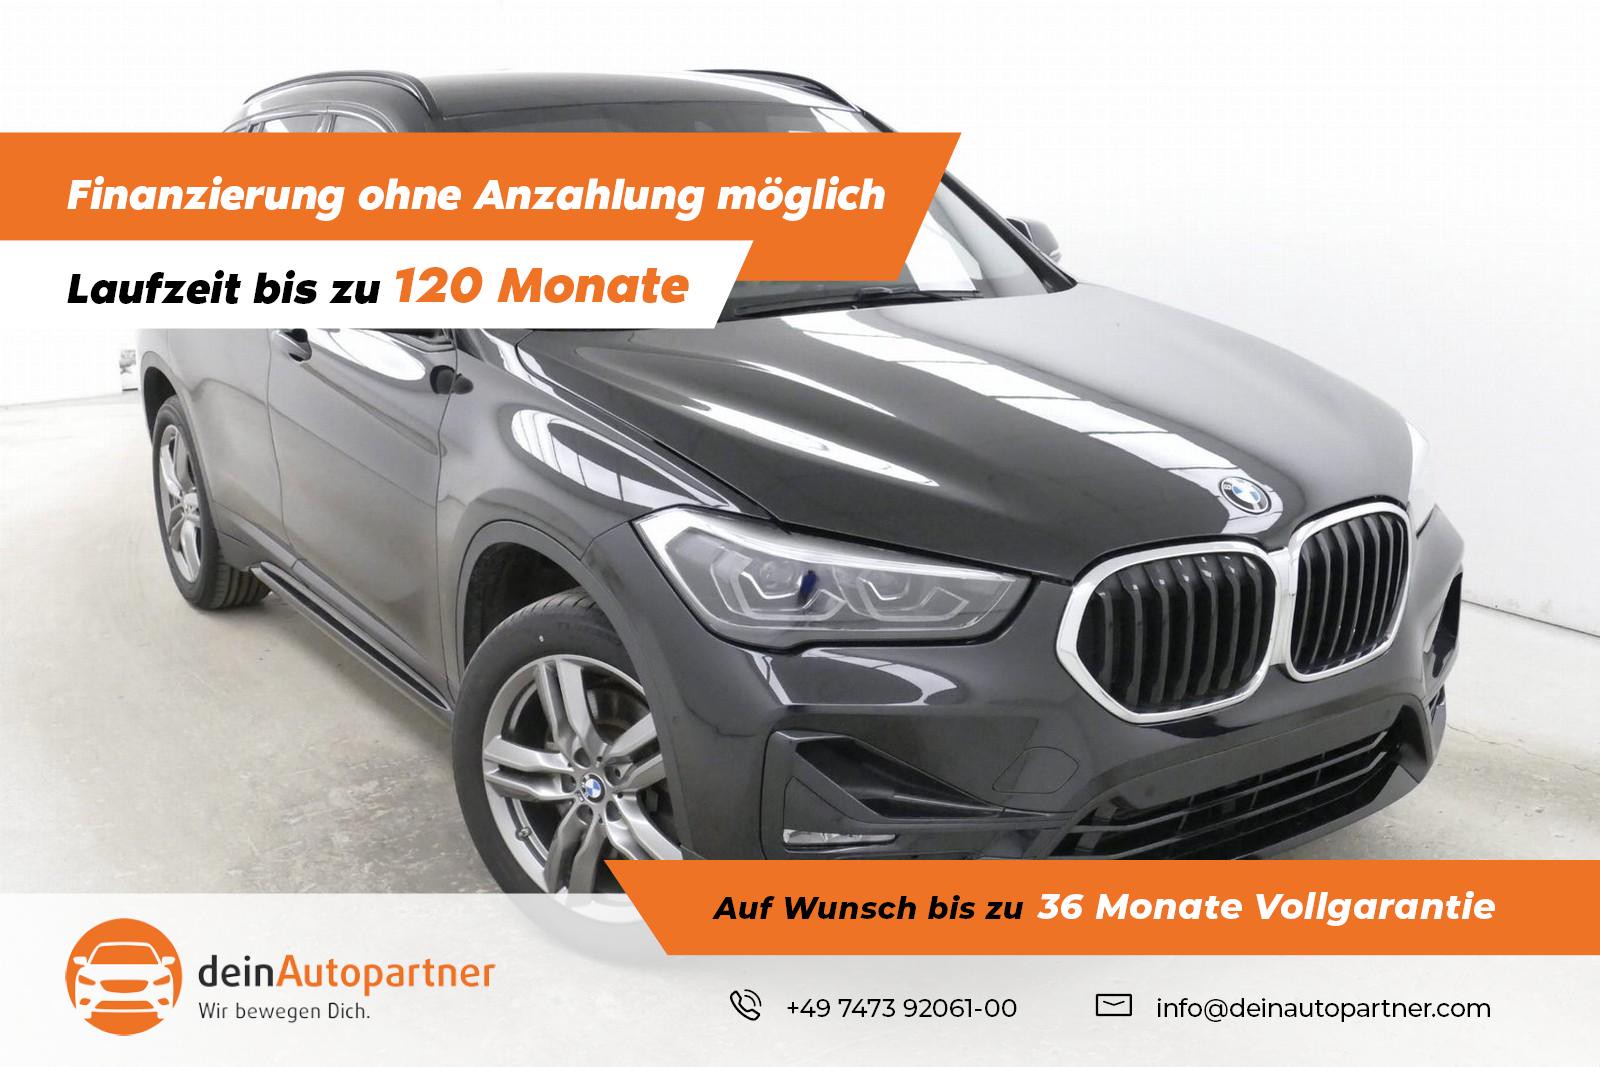 BMW X1 20i Sport Line gebraucht kaufen in Mössingen Preis 27850 eur -  Int.Nr.: 2544